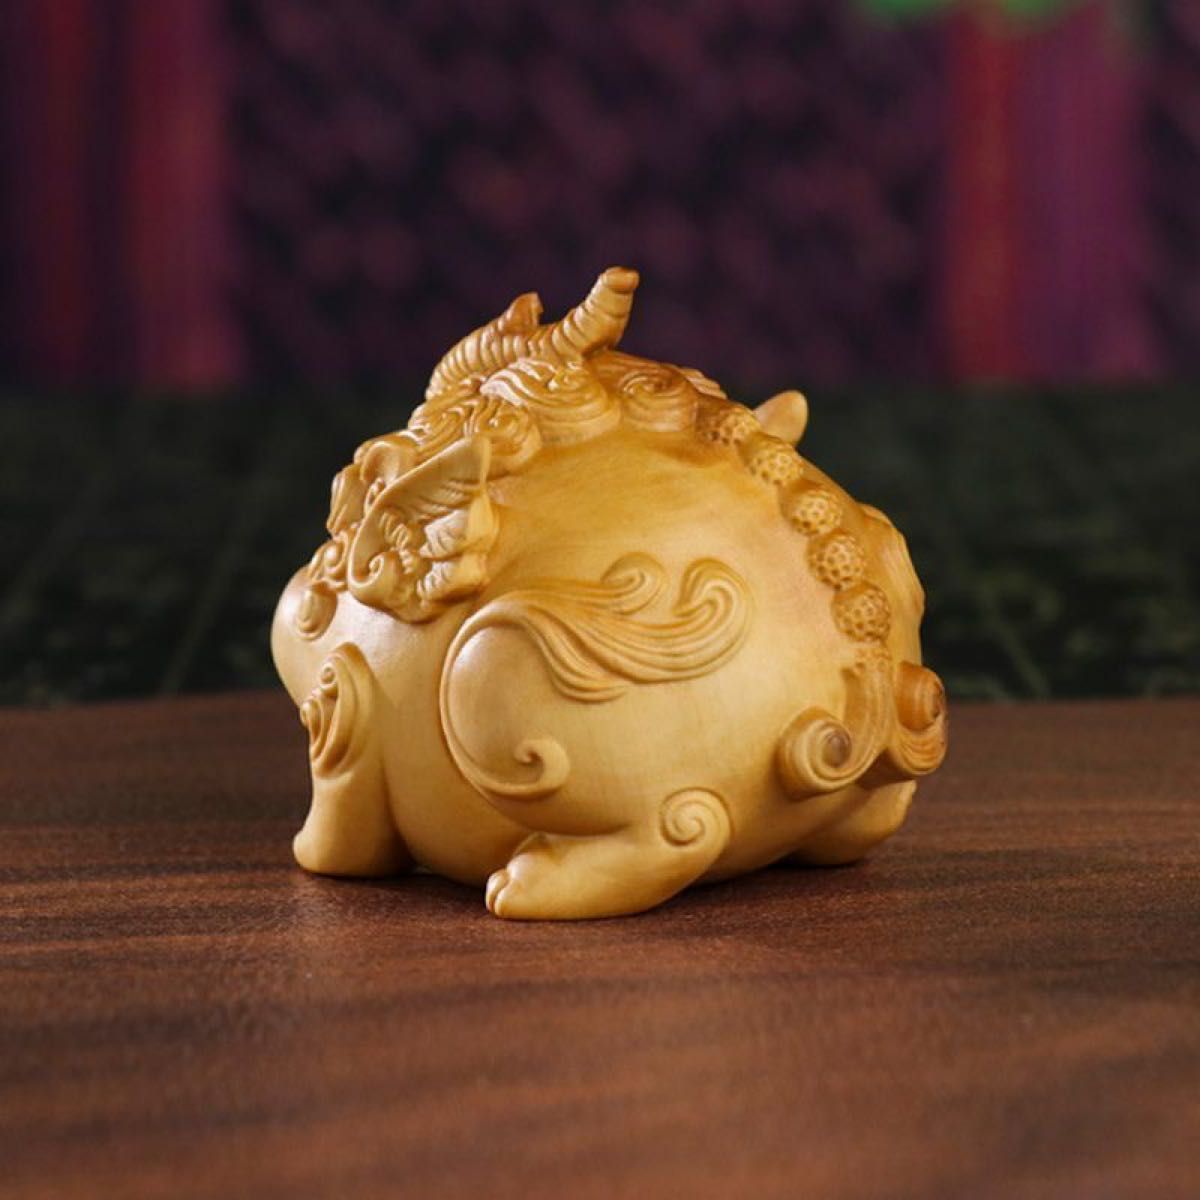 柘植彫刻 木彫り 神獣 貔貅 超可愛いヒキュウ オブジェ 根付 伝統的に細工物の材木として貴重とされる 仏教美術 